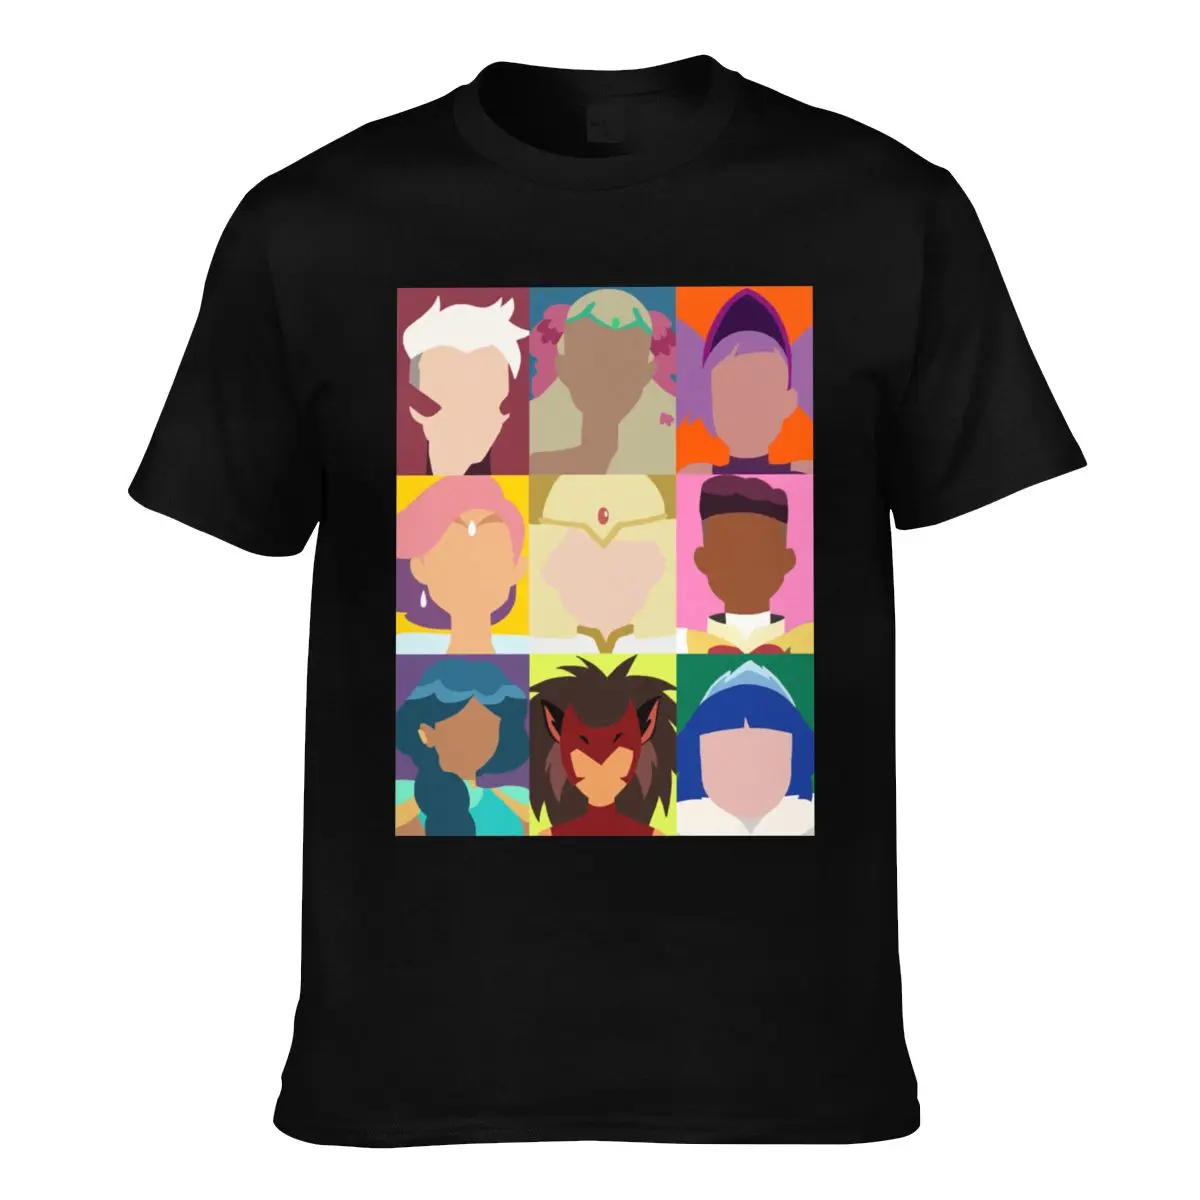 Homens T-Shirt Ela Ra Pop Arte Pura, T-Shirts spop catra arco brilho Original de Algodão de Impressão Camiseta de Mangas Curtas Tees Presente 3XL 4XL 5XL Imagem 1